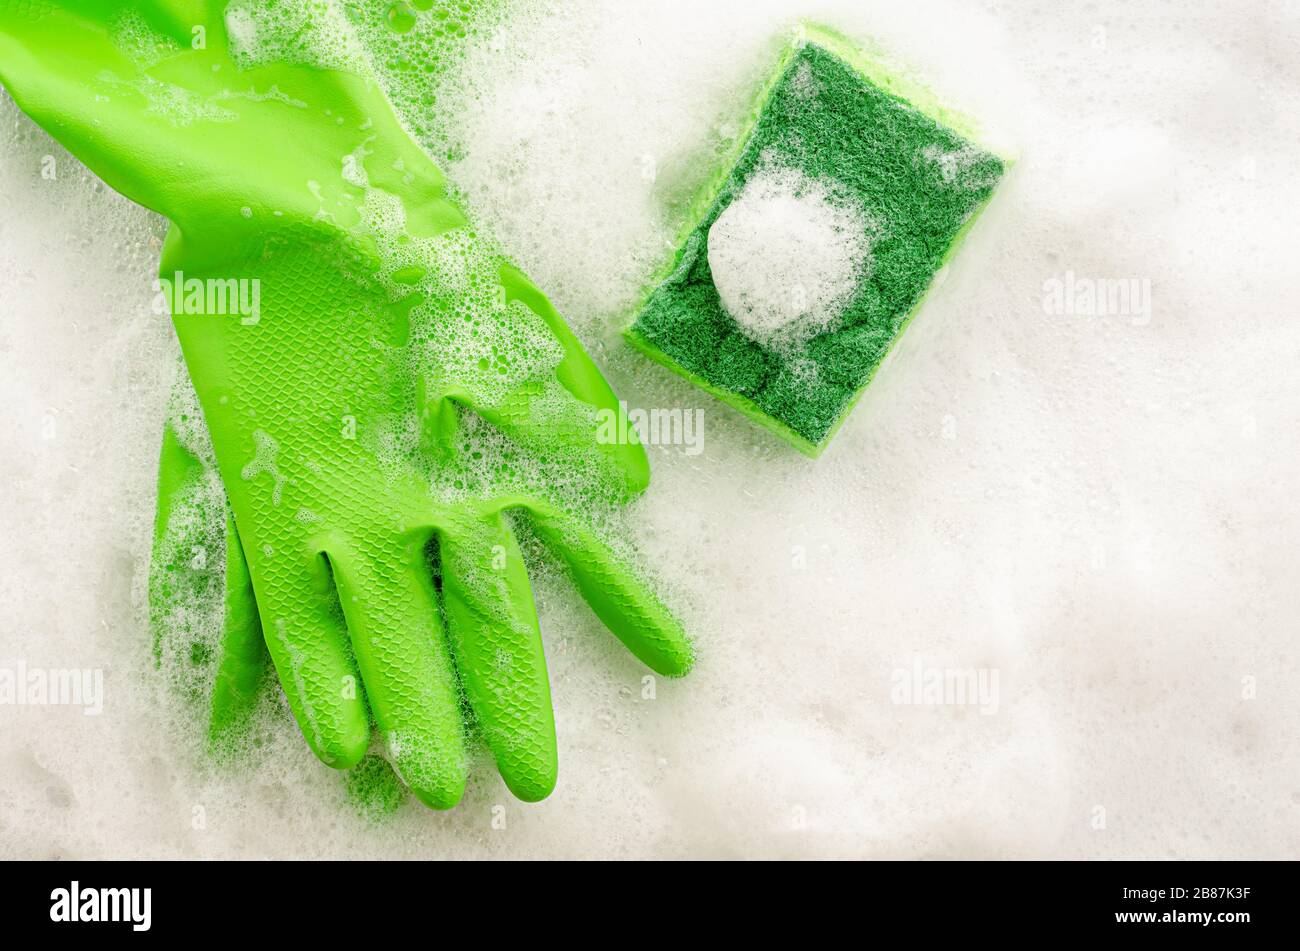 Vue de dessus des gants de protection verts et de l'éponge sur fond savonneux. Concept de travaux ménagers. Espace de copie, vue de dessus Banque D'Images